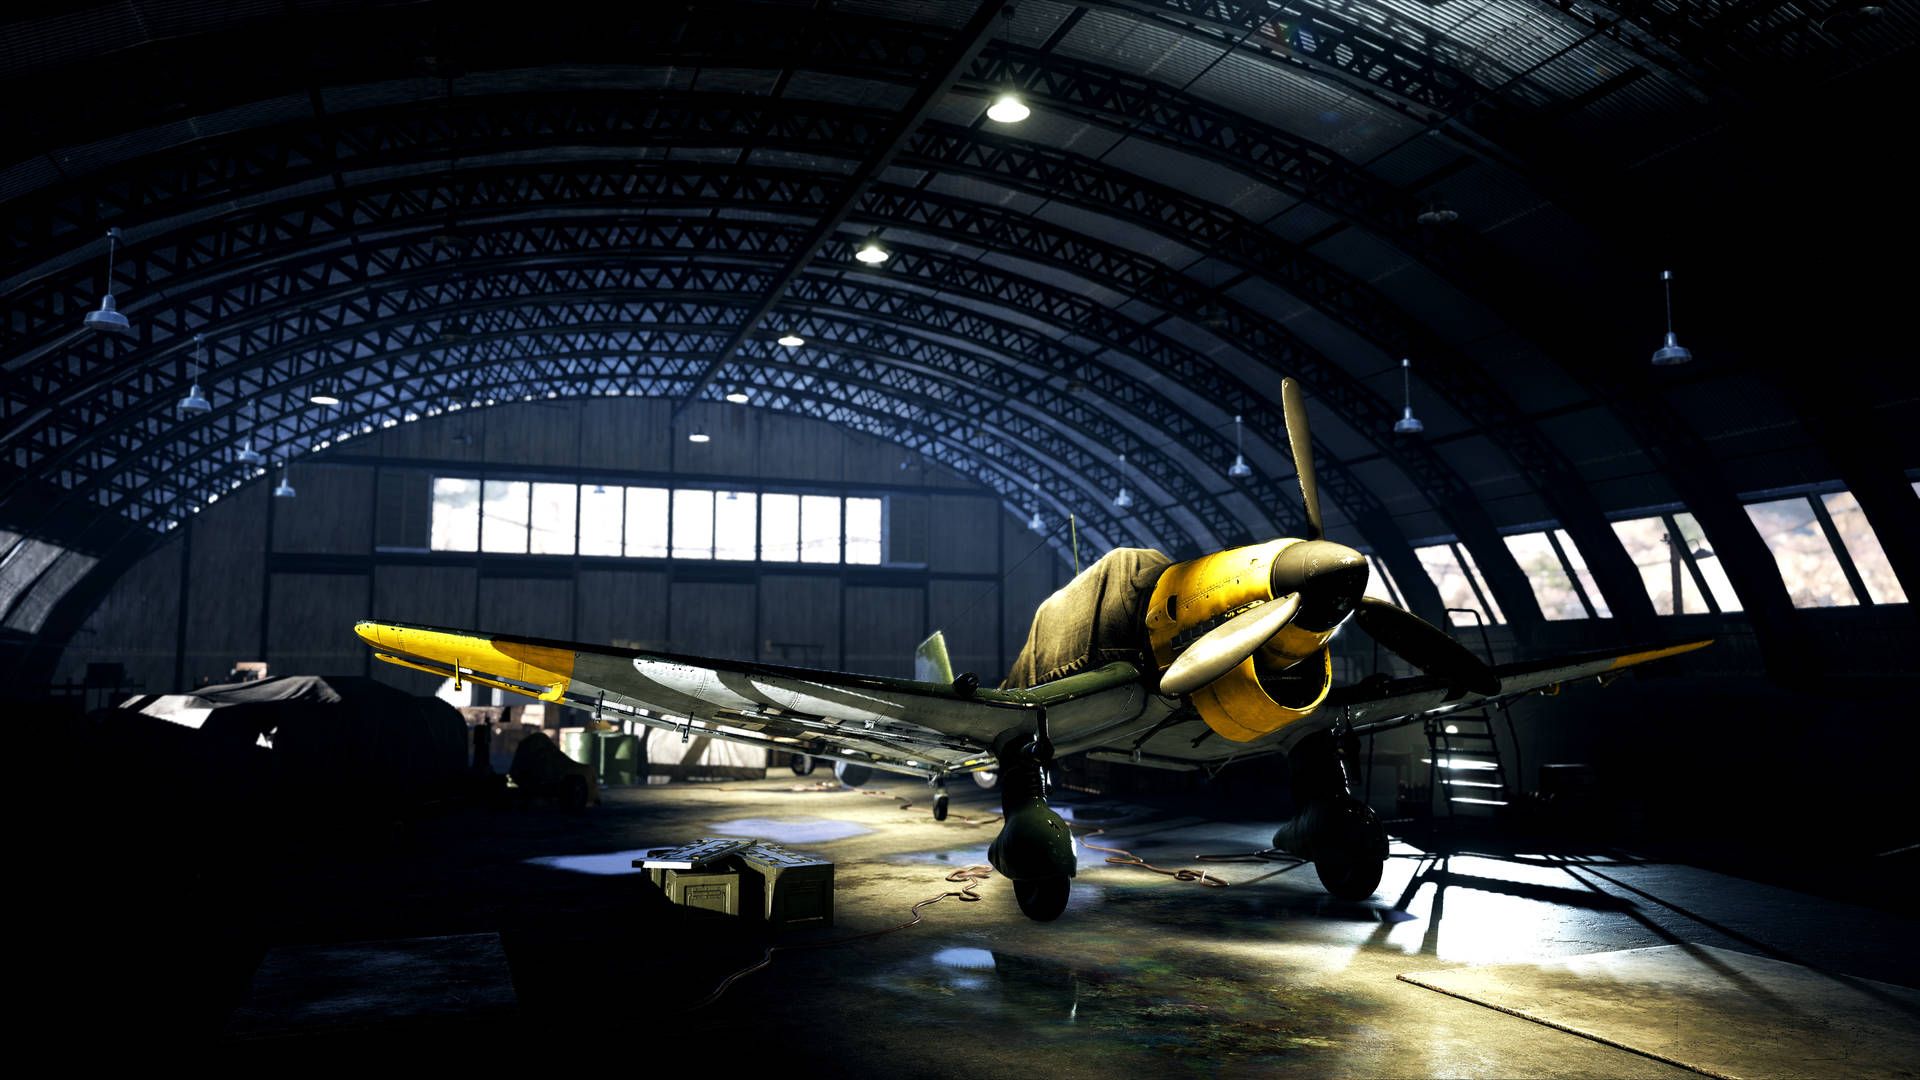 Battlefield 5 4K Plane In Hangar Wallpaper